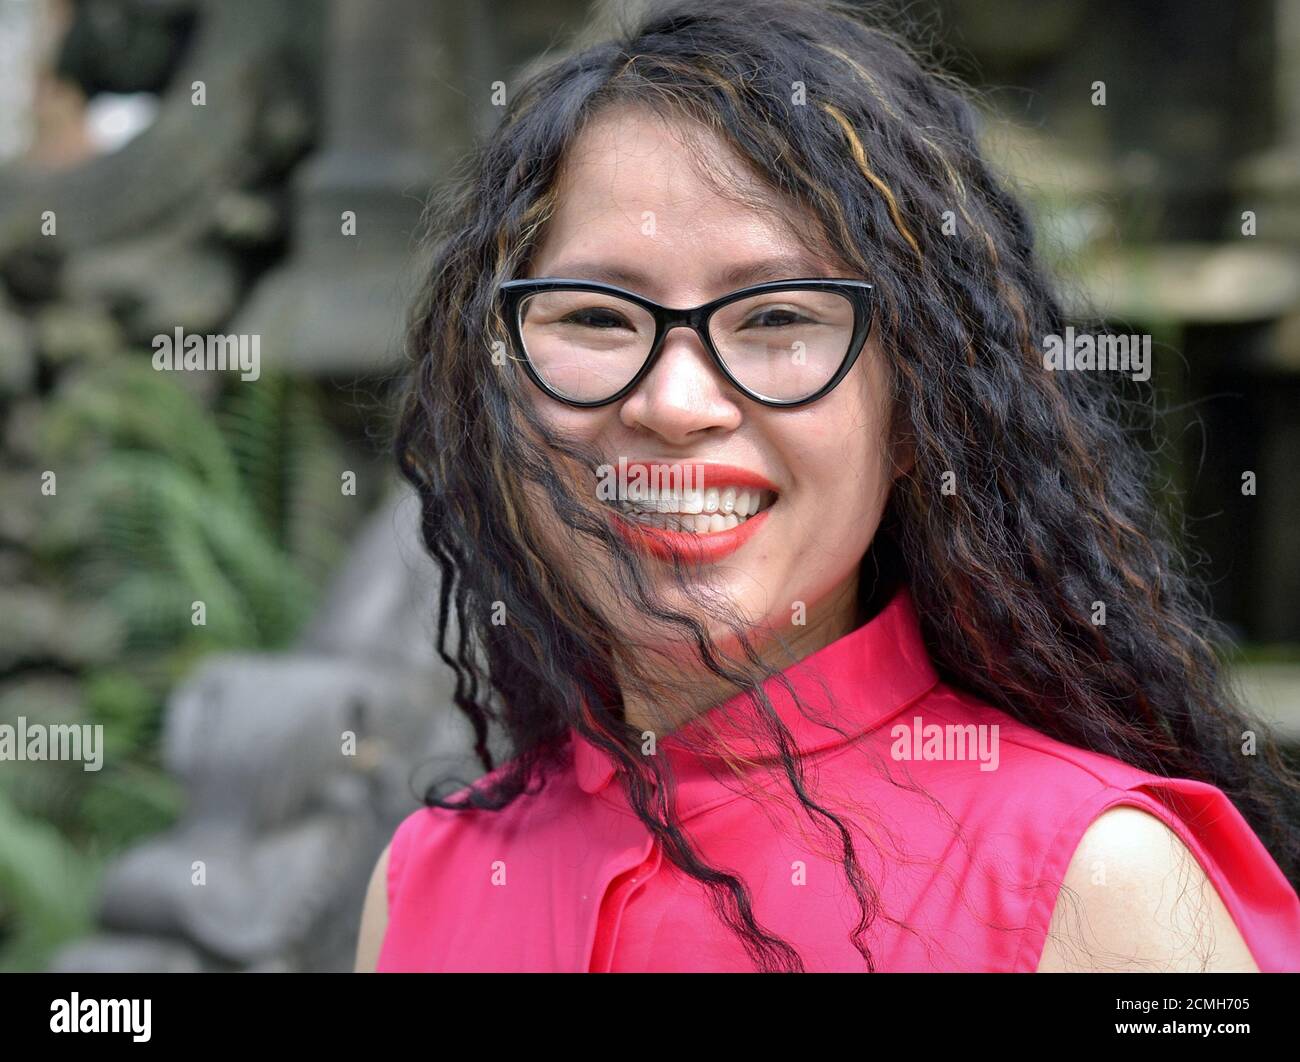 Giovane attraente allegra donna vietnamita con grandi occhiali indossa una blusa rosa e sorride per la macchina fotografica. Foto Stock